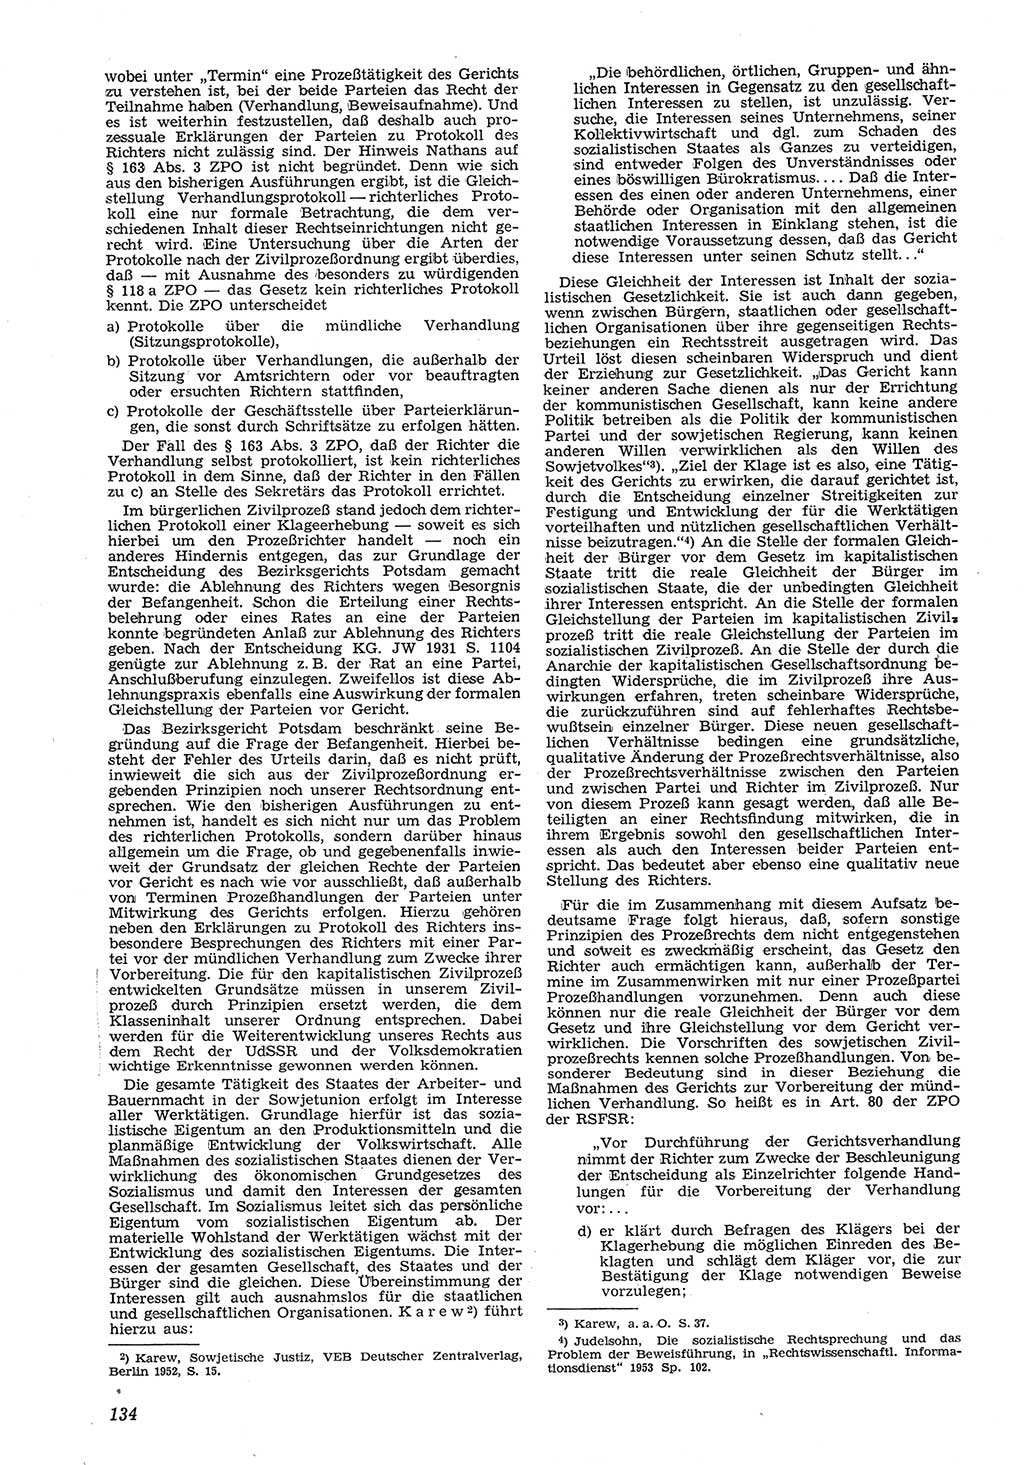 Neue Justiz (NJ), Zeitschrift für Recht und Rechtswissenschaft [Deutsche Demokratische Republik (DDR)], 8. Jahrgang 1954, Seite 134 (NJ DDR 1954, S. 134)